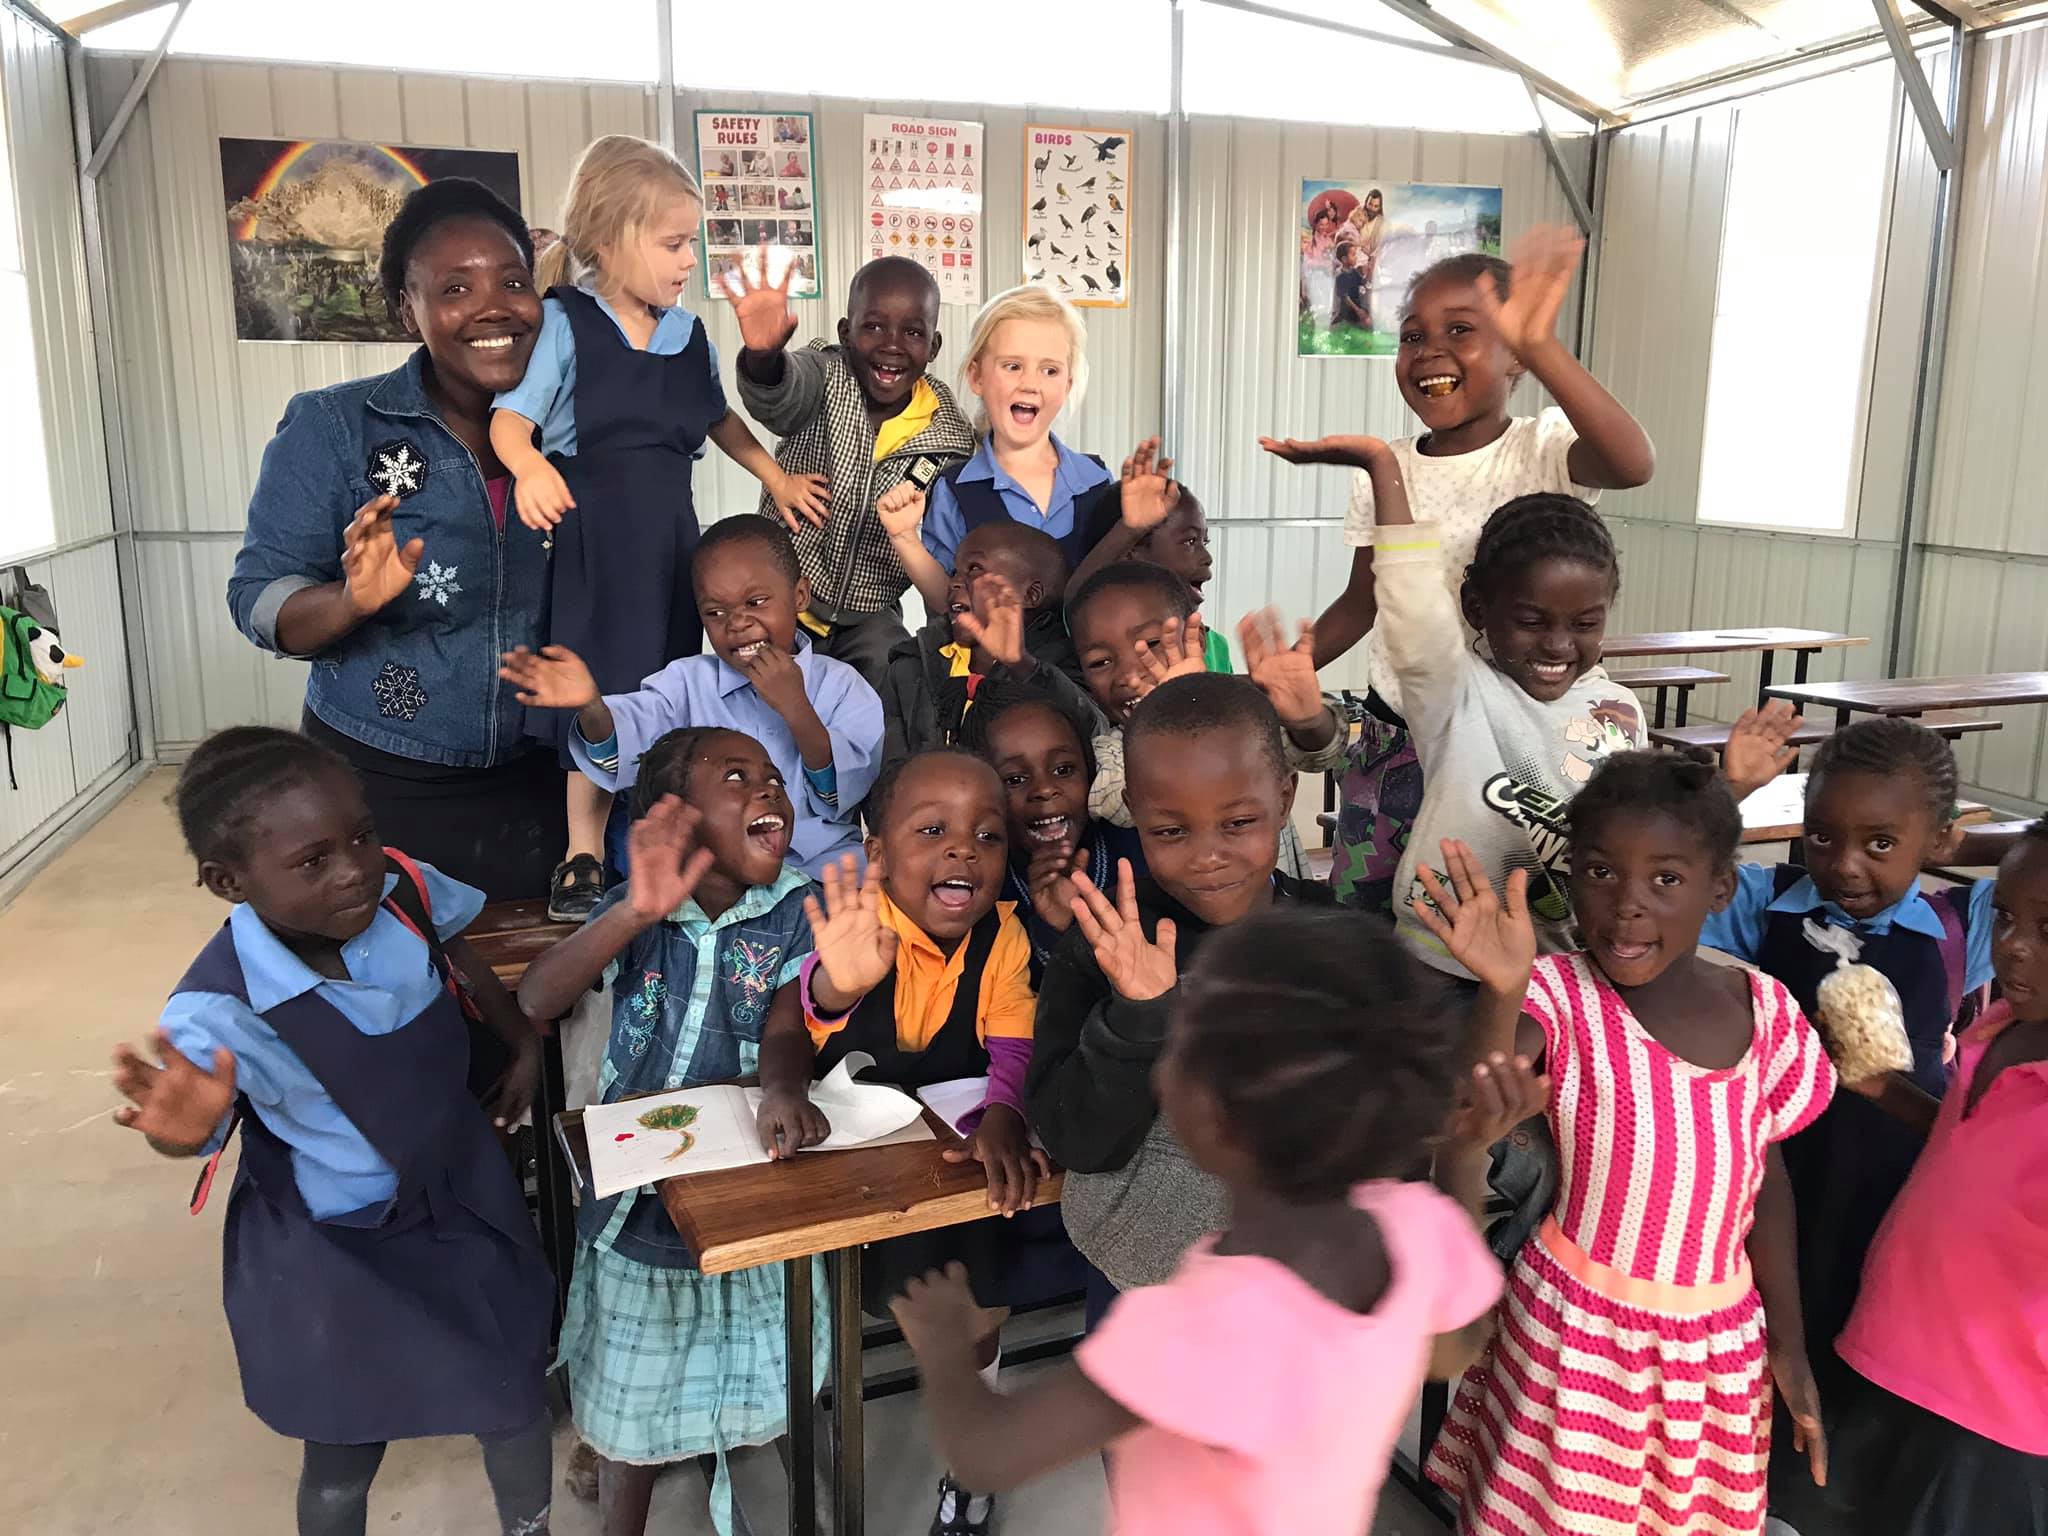 The kids of Zambia